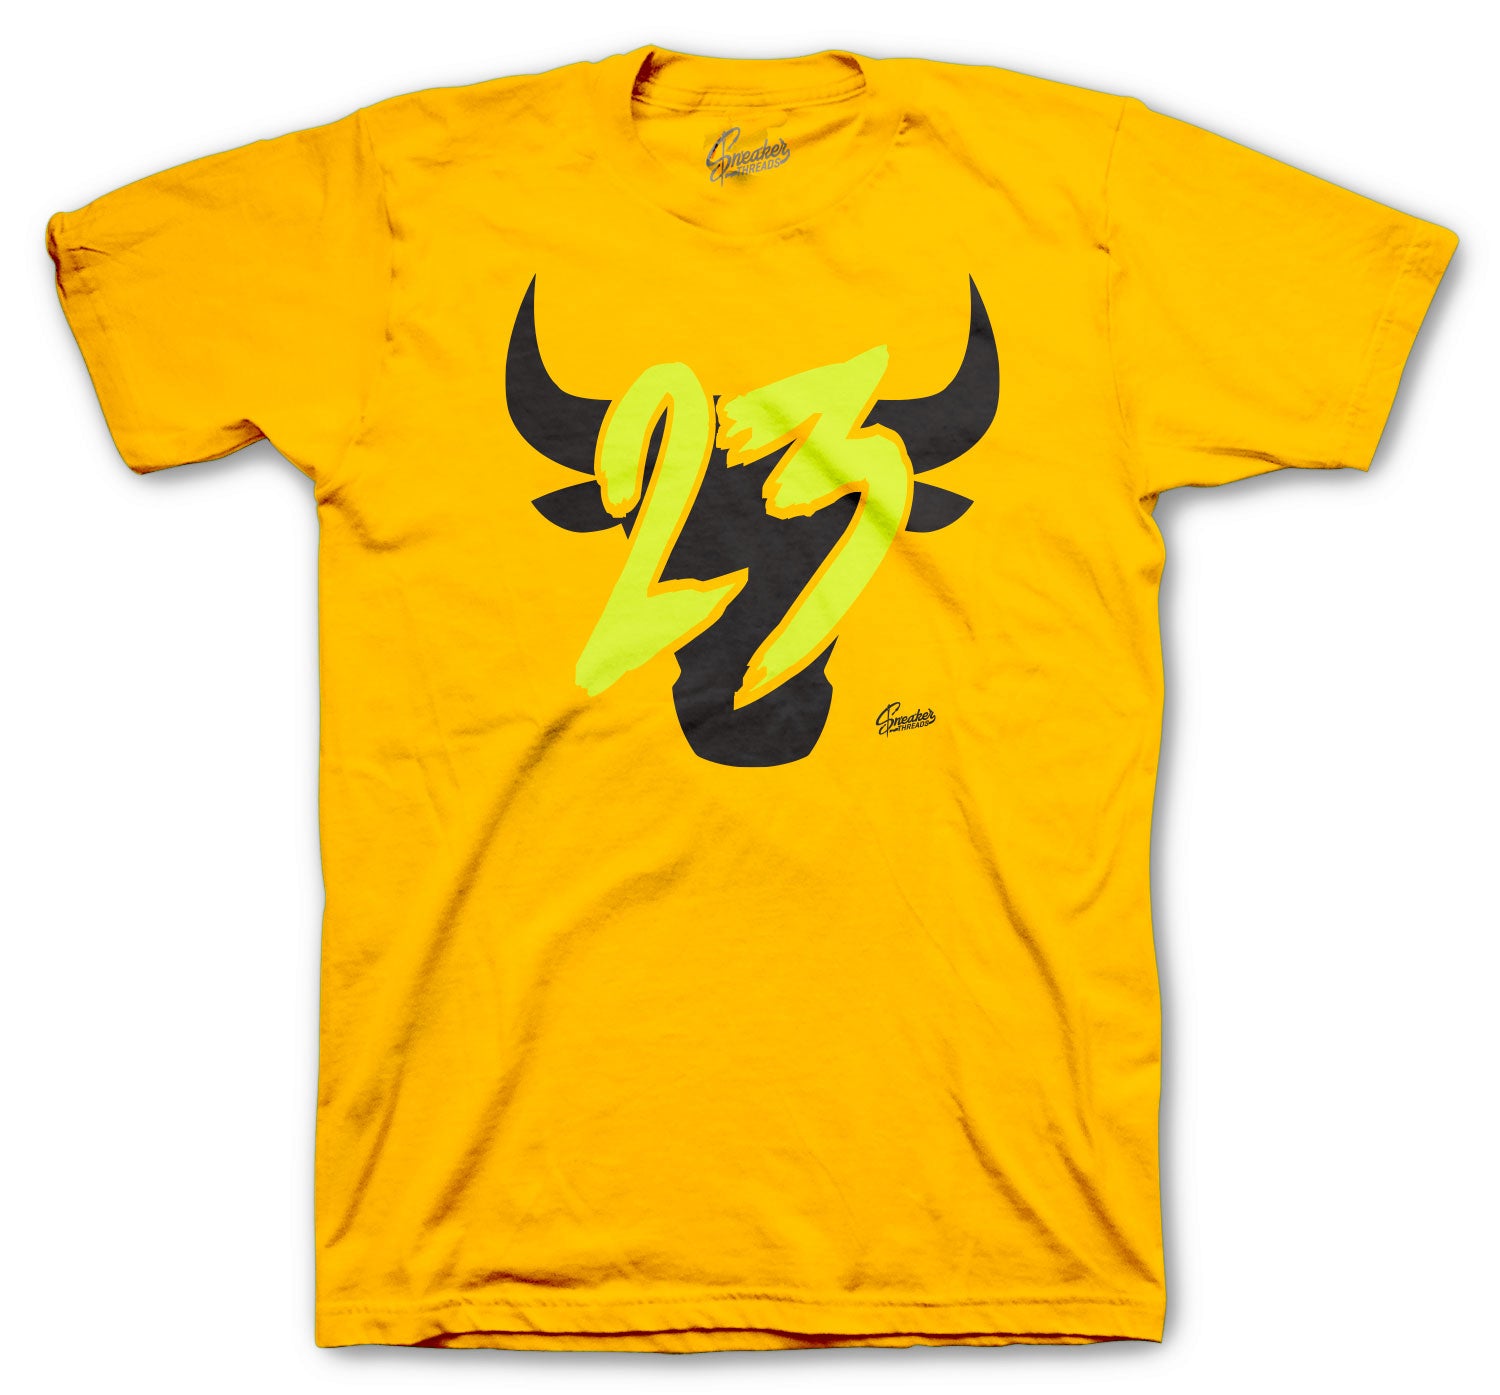 Retro 1 Volt Gold Shirt -  Toro - Gold